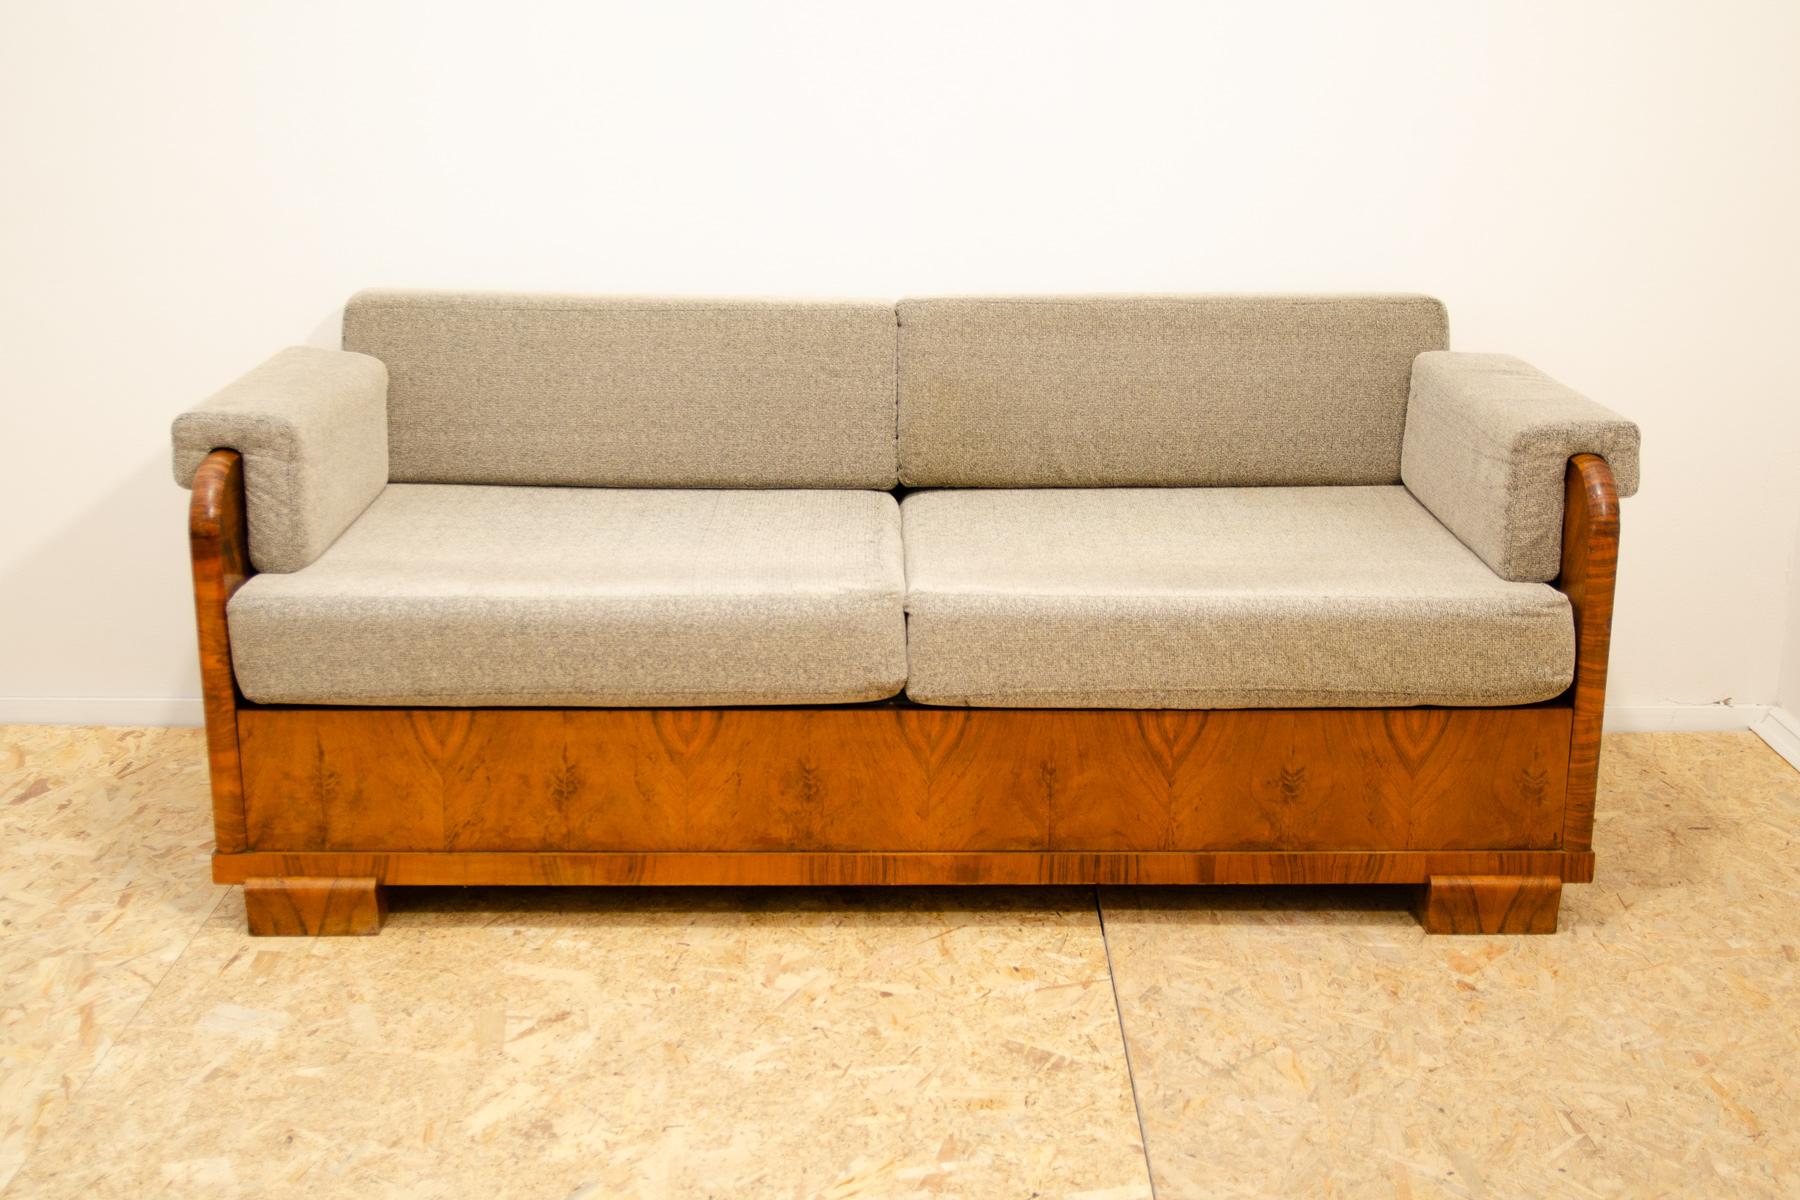 ART DECO Couch, hergestellt in den 1930er Jahren in der ehemaligen Tschechoslowakei. Er ist aus Walnussholz gefertigt, hat gepolsterte Armlehnen und Stauraum für Bettzeug. Die Polsterung wurde gereinigt, das Holz ist grundsätzlich in sehr gutem